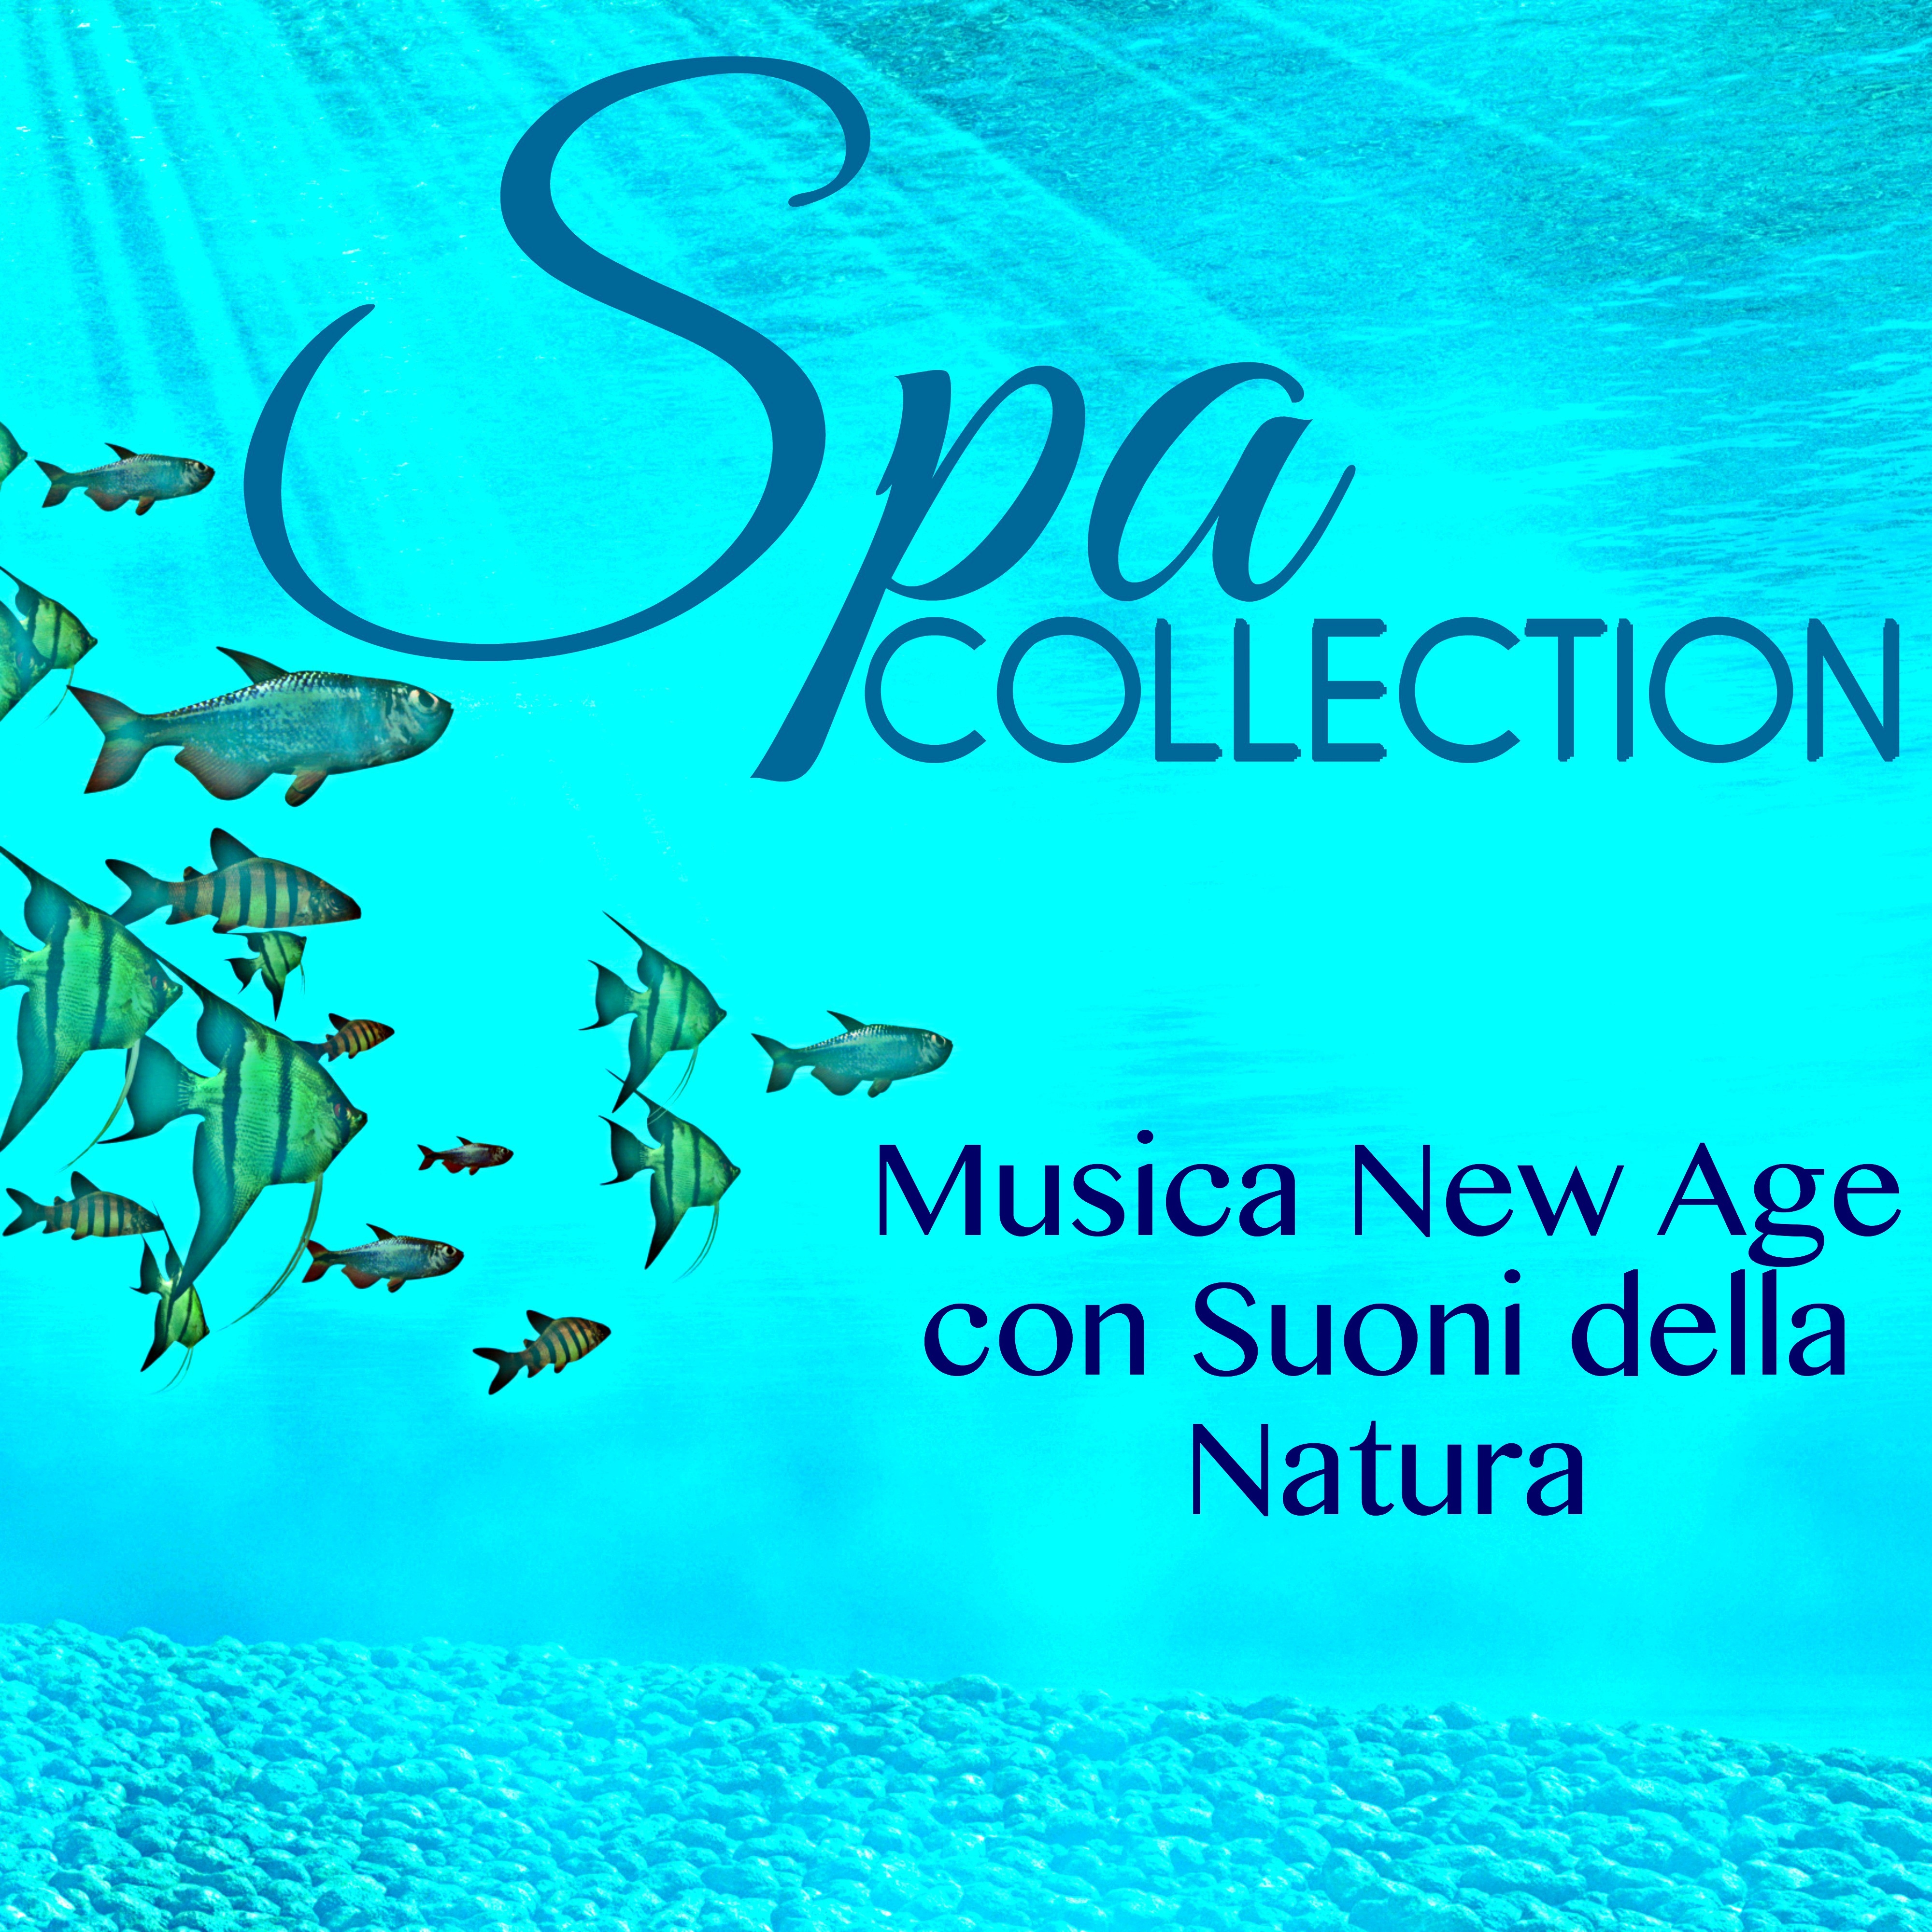 Spa Collection - Musica New Age con Suoni della Natura & Bellissime Musiche di Chill Out per Massaggio Rilassante, Benessere ed Energia Positiva, Collezione di Meditazione Spa